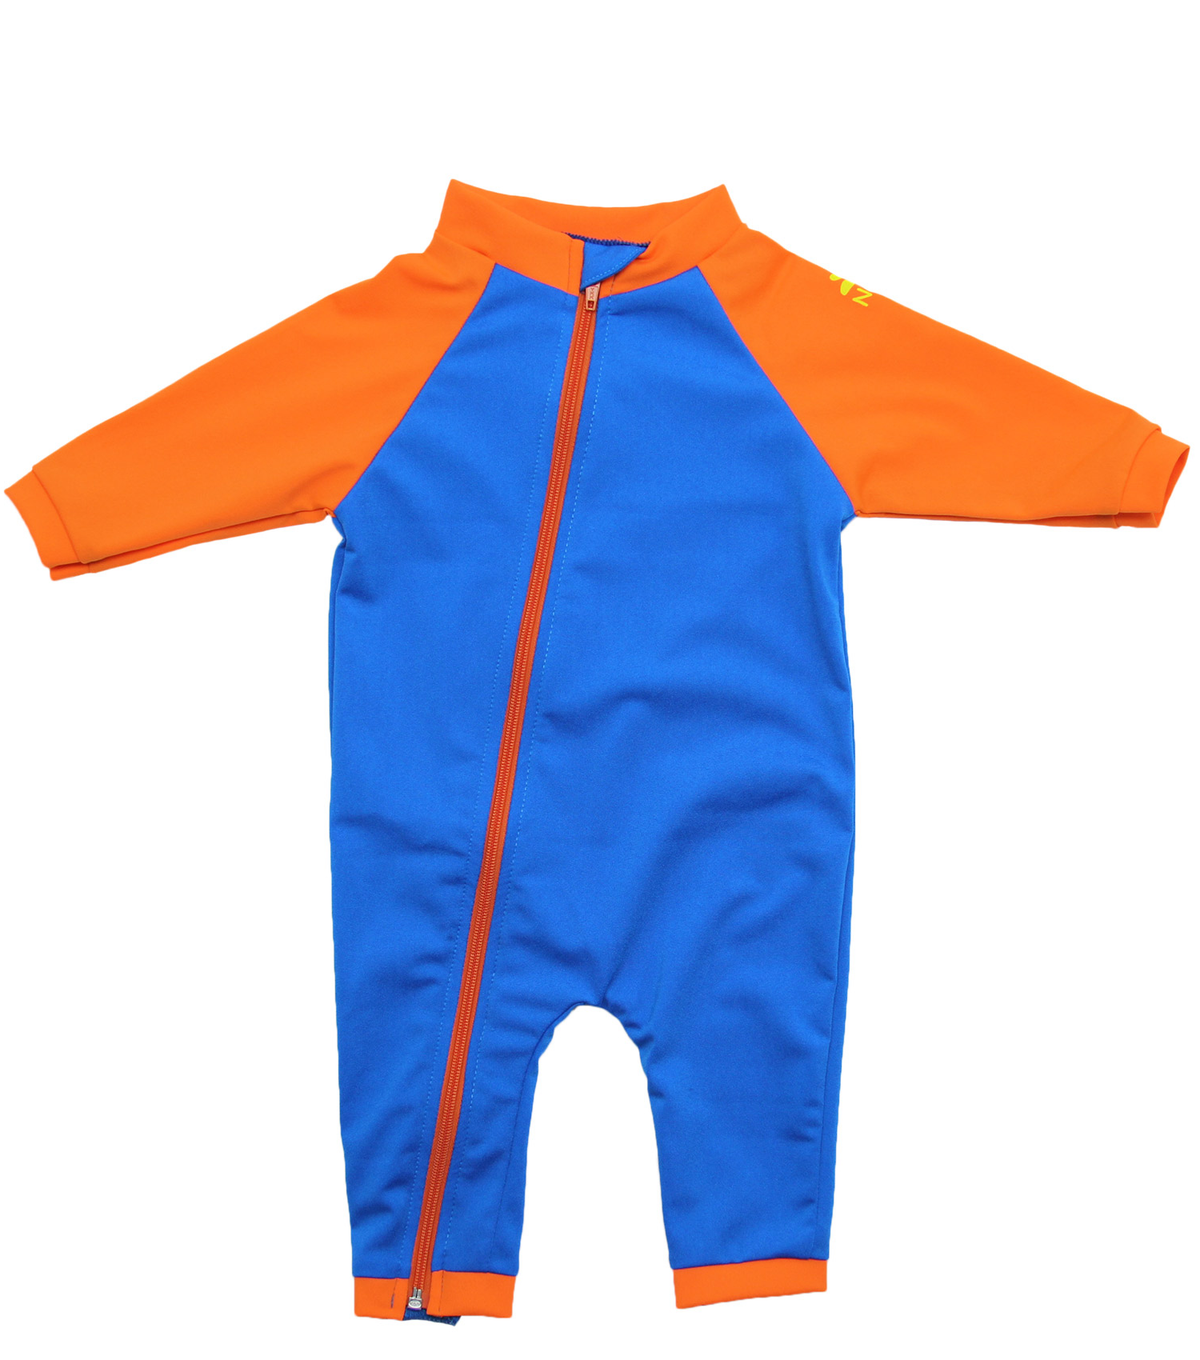 nozone tahiti full zip baby boy swimsuit long sleeves upf 50+ sun protection blue orange #color_Marine/Orange